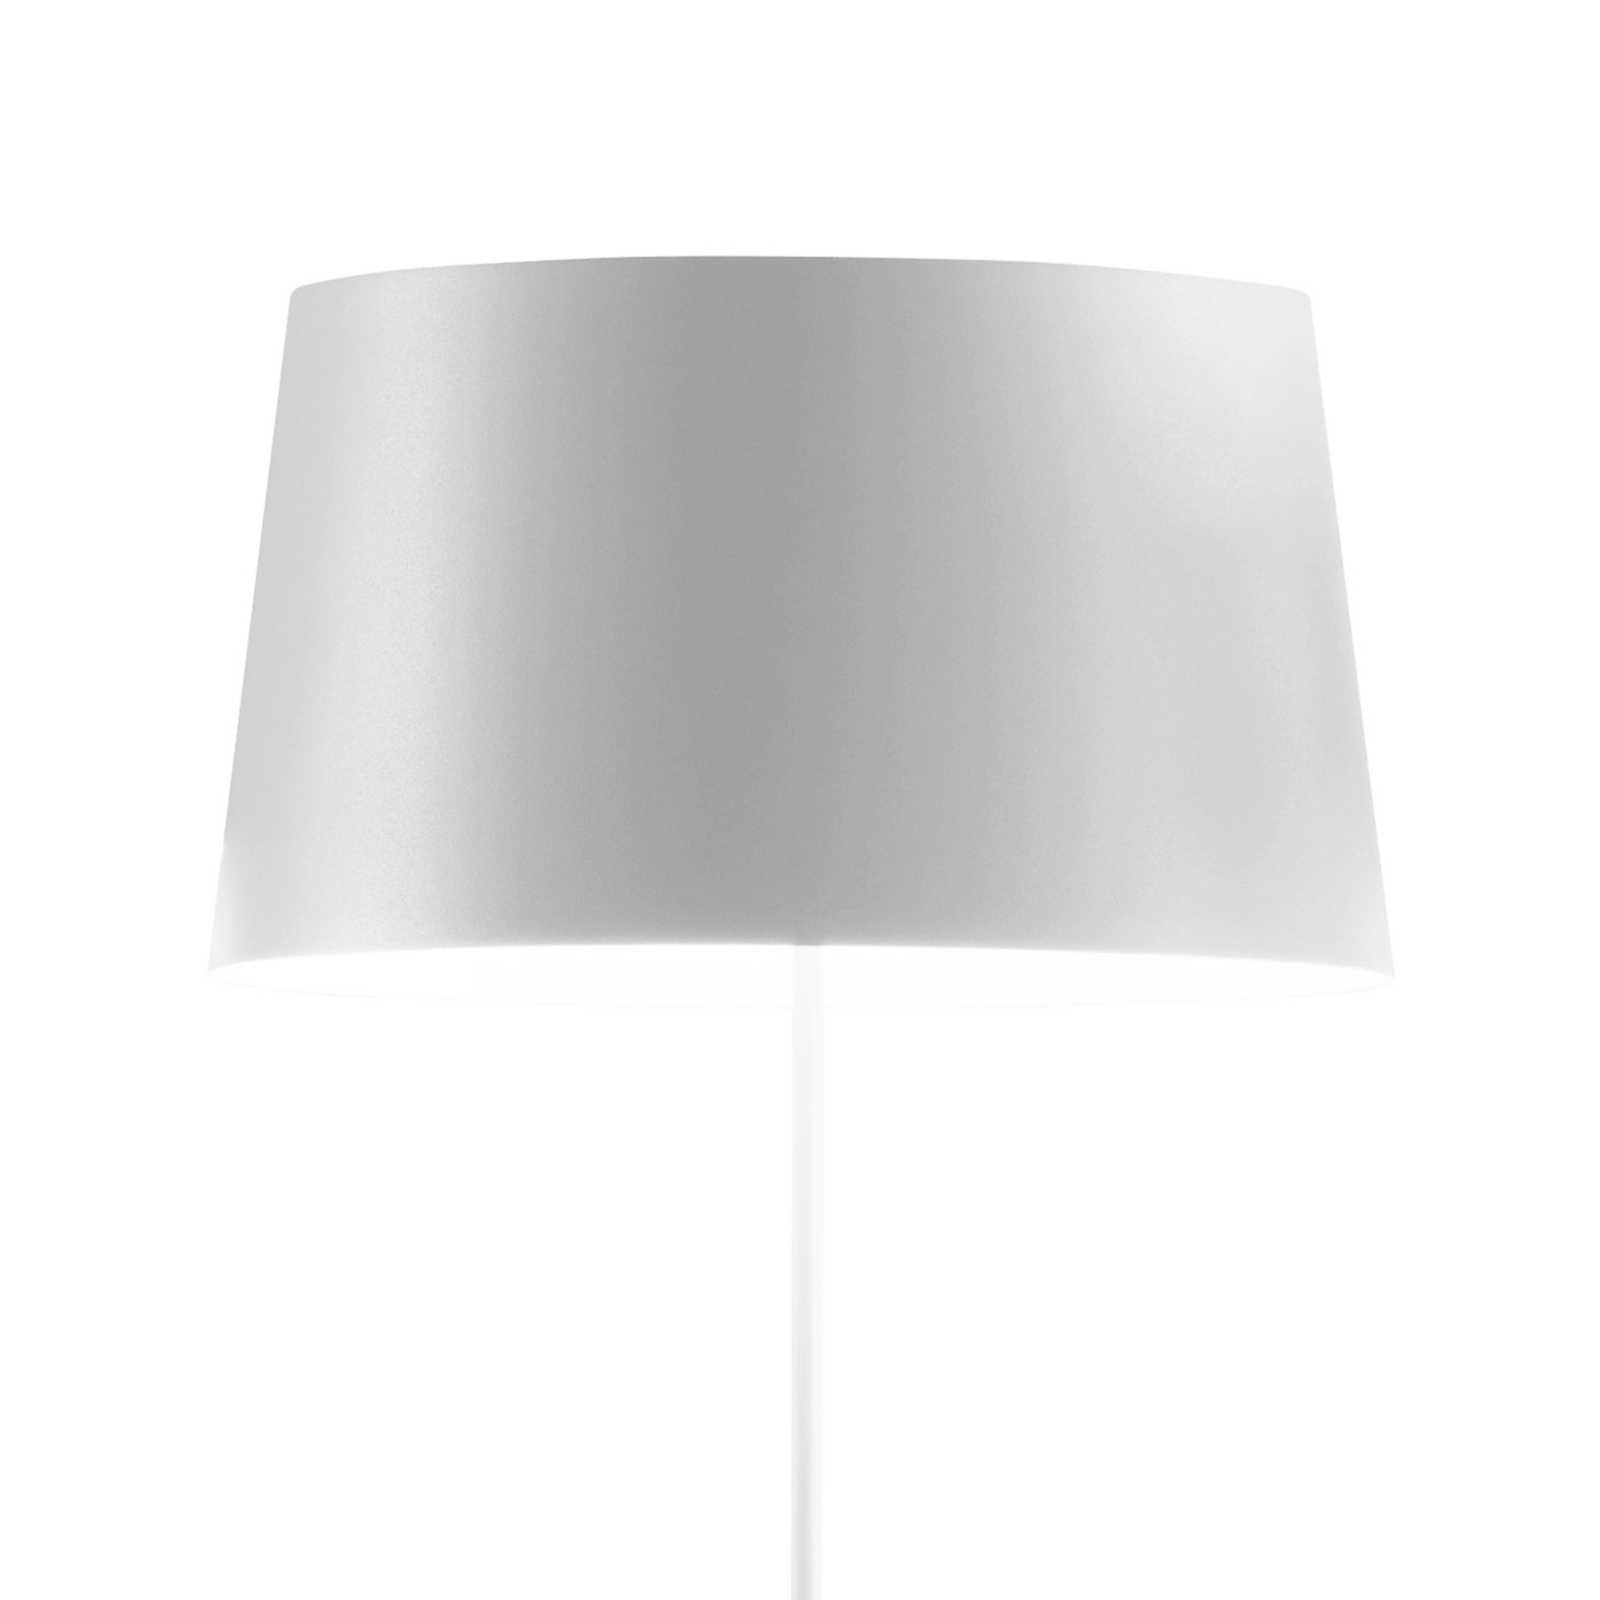 Vibia Warm 4906 design vloerlamp, wit